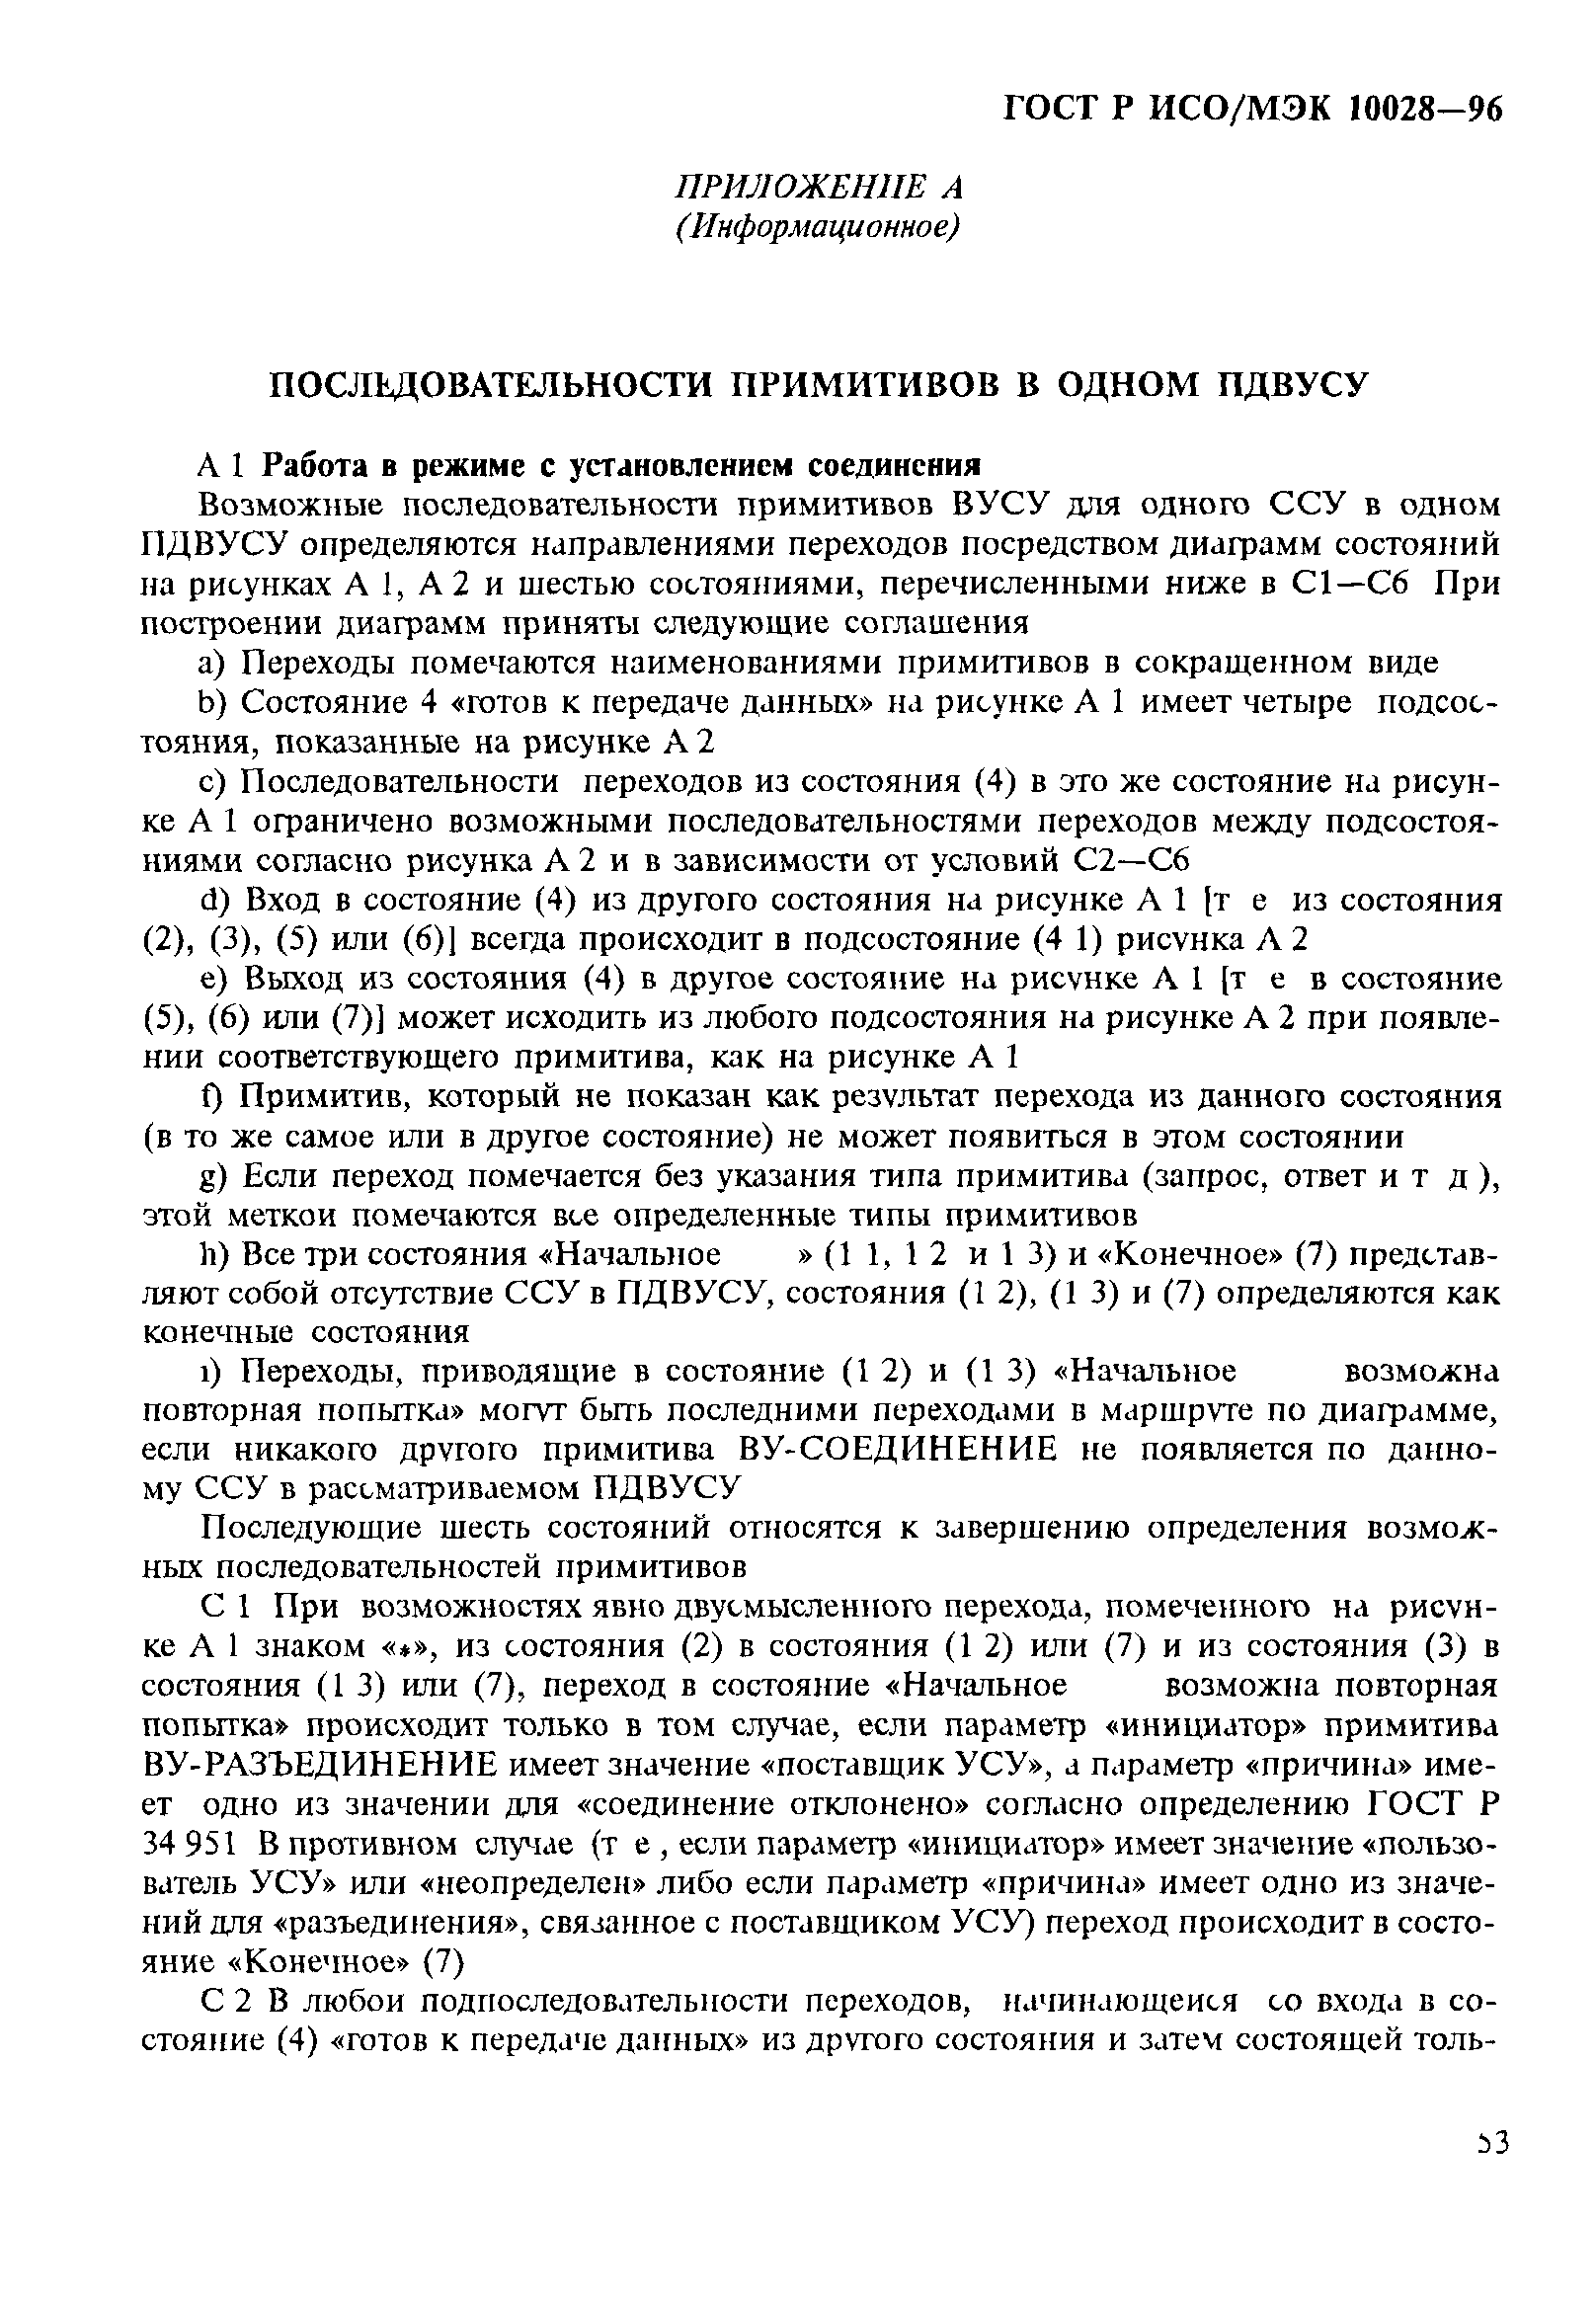 ГОСТ Р ИСО/МЭК 10028-96